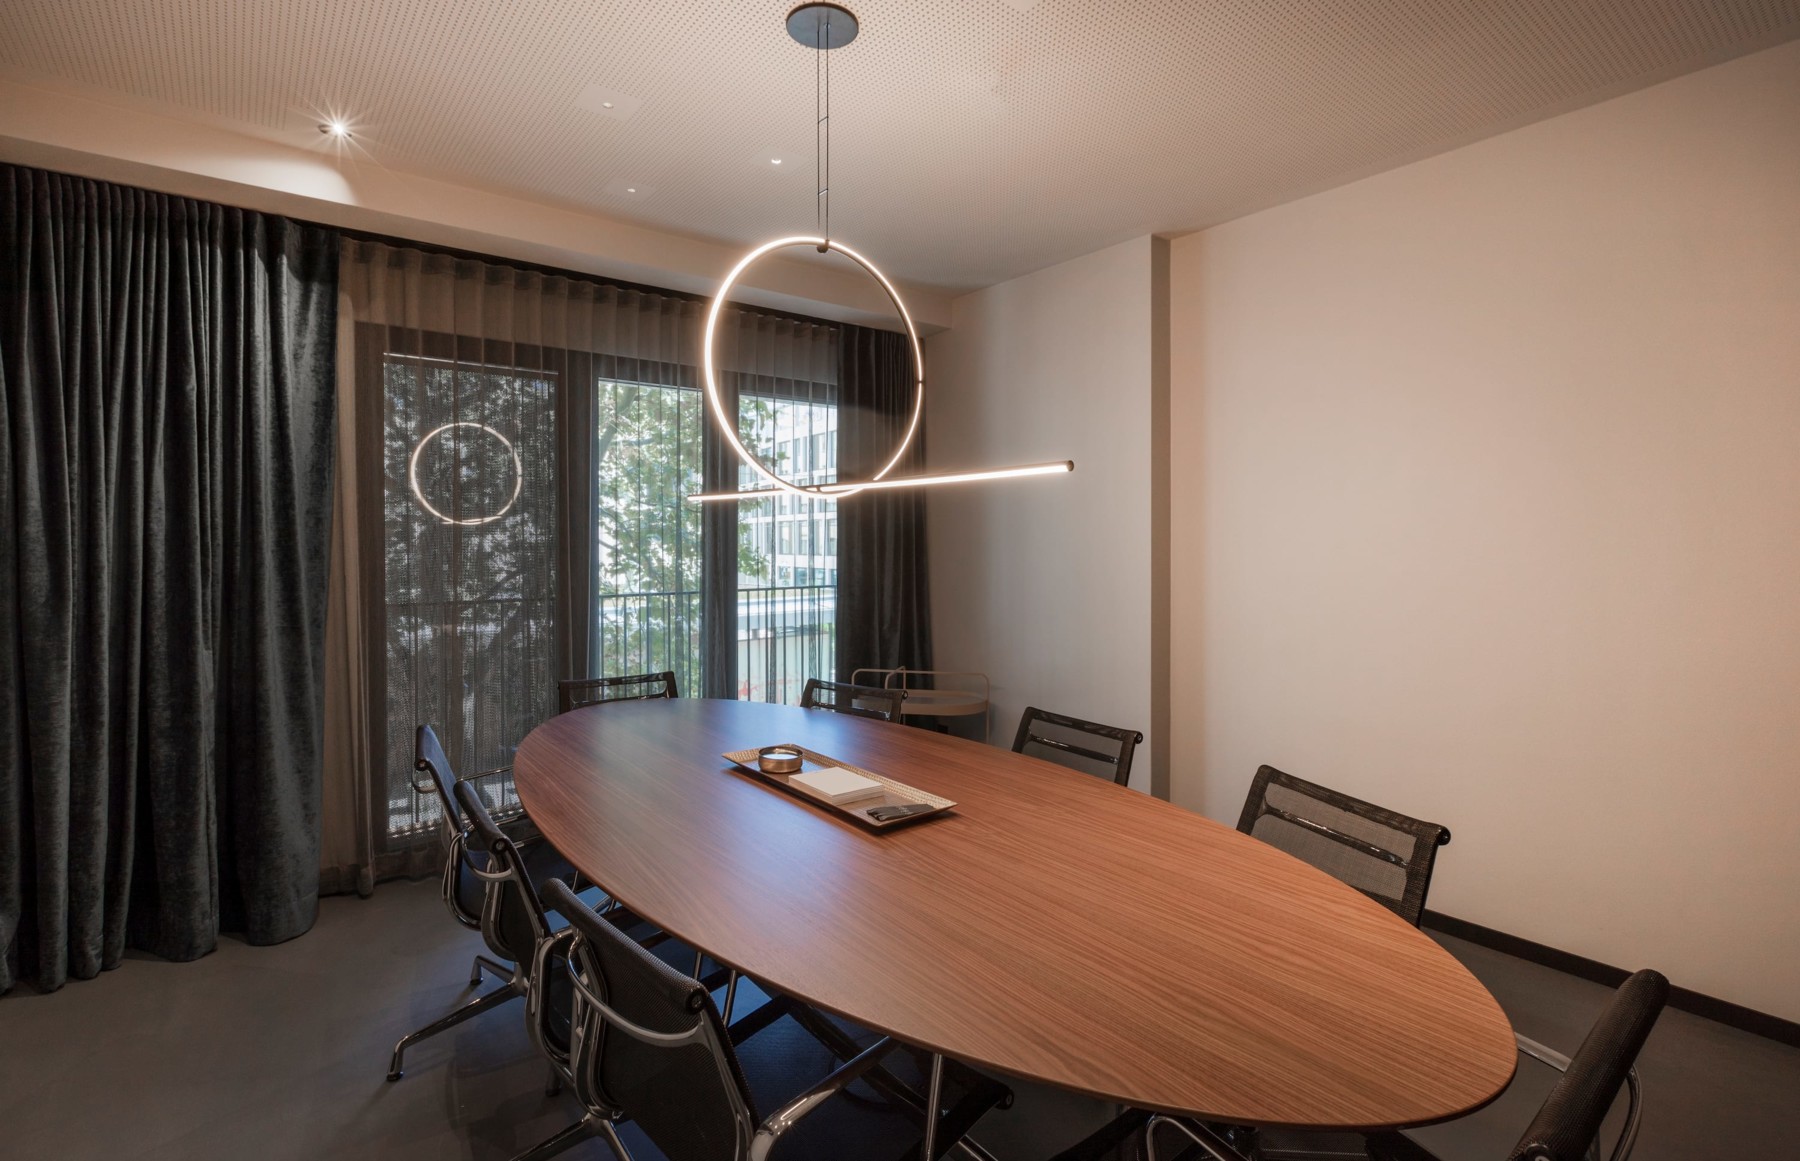 Stilvoller Meetingraum im Hotel mit Konferenztisch und Stühlen